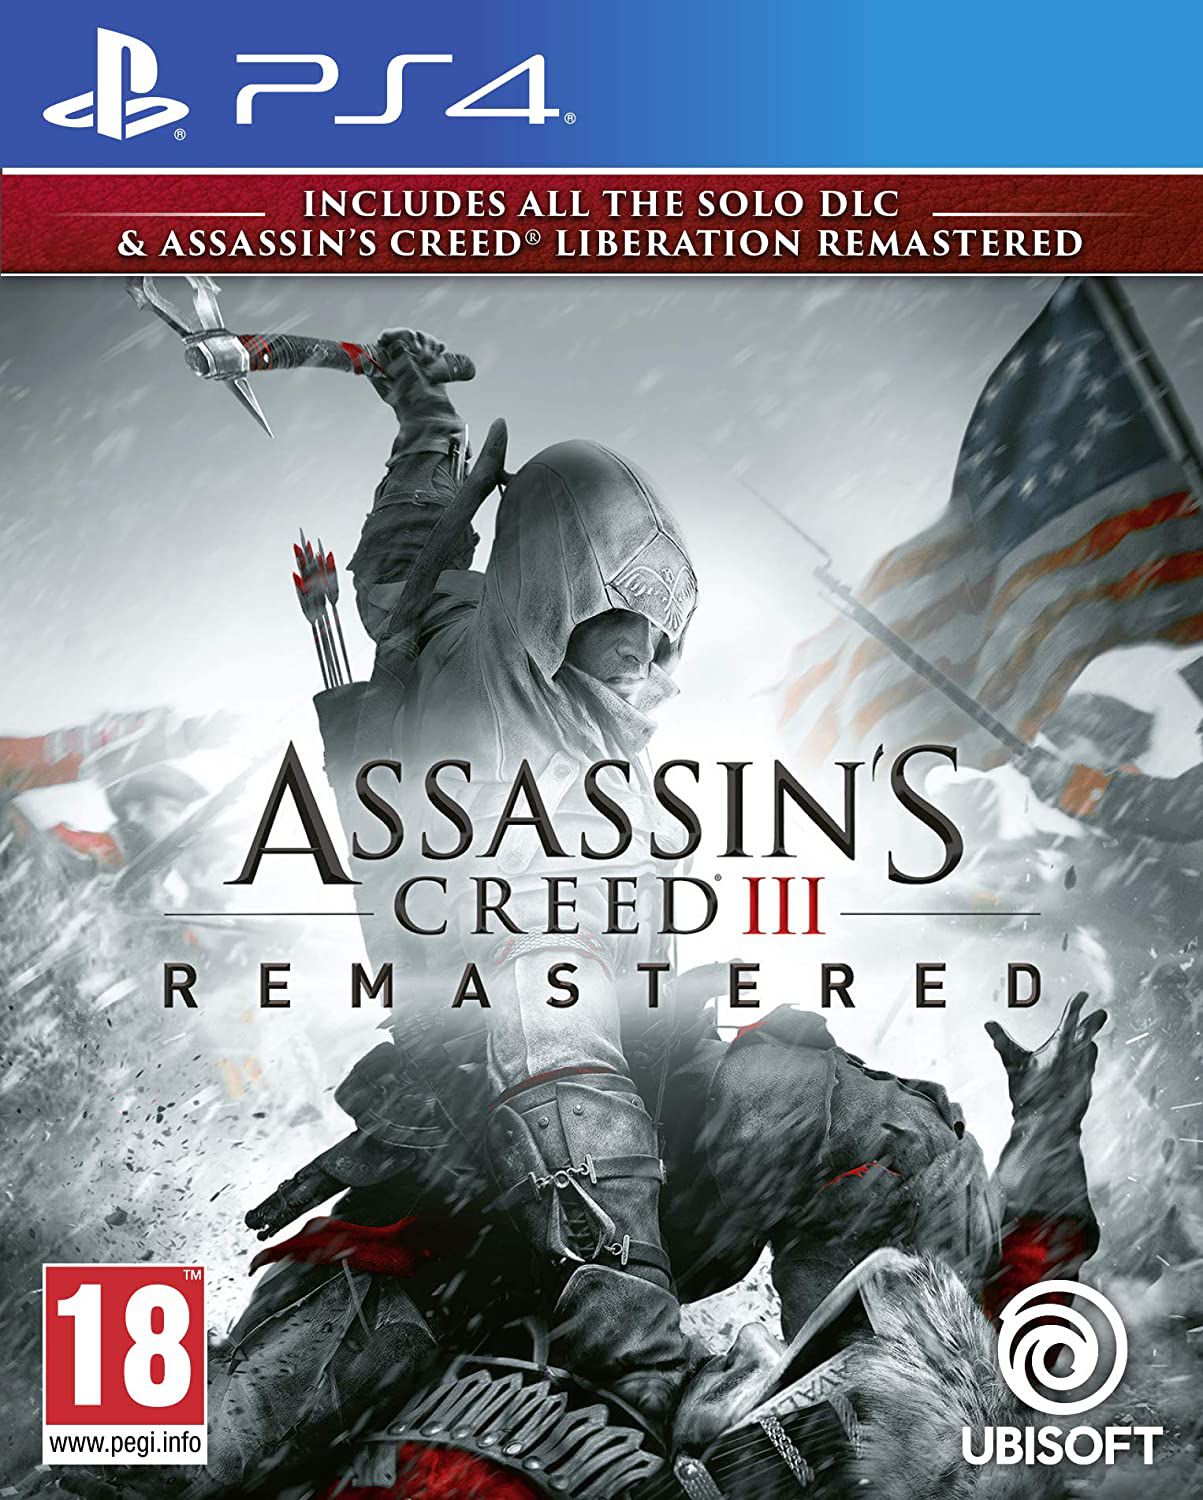 Assassins Creed 3 Dublado PT BR Playstation 3